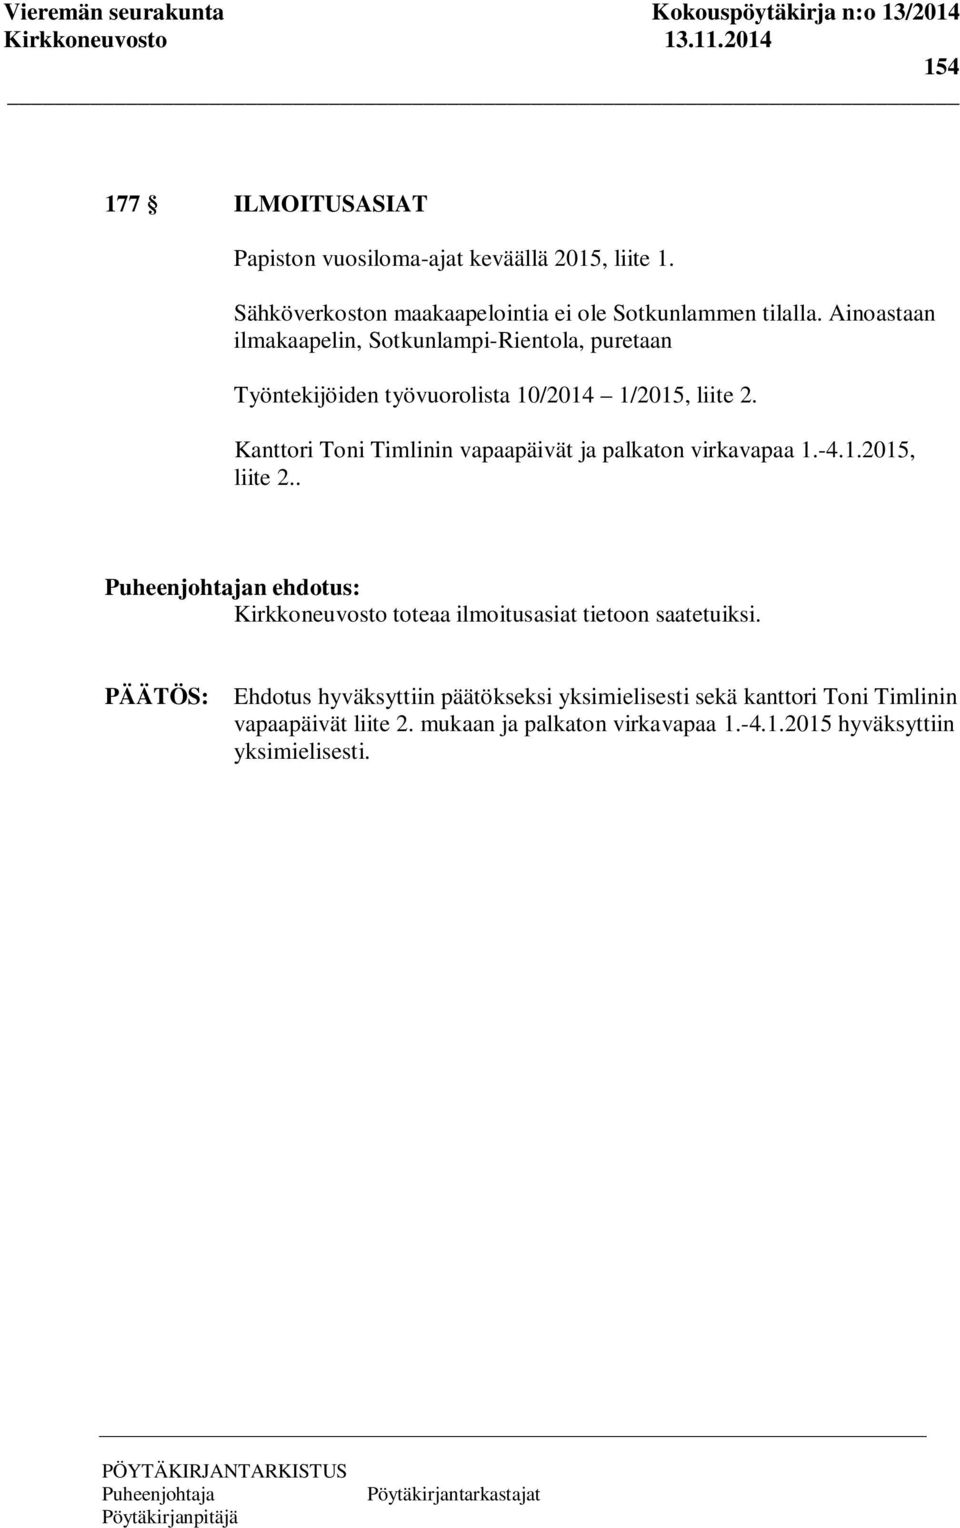 Kanttori Toni Timlinin vapaapäivät ja palkaton virkavapaa 1.-4.1.2015, liite 2.